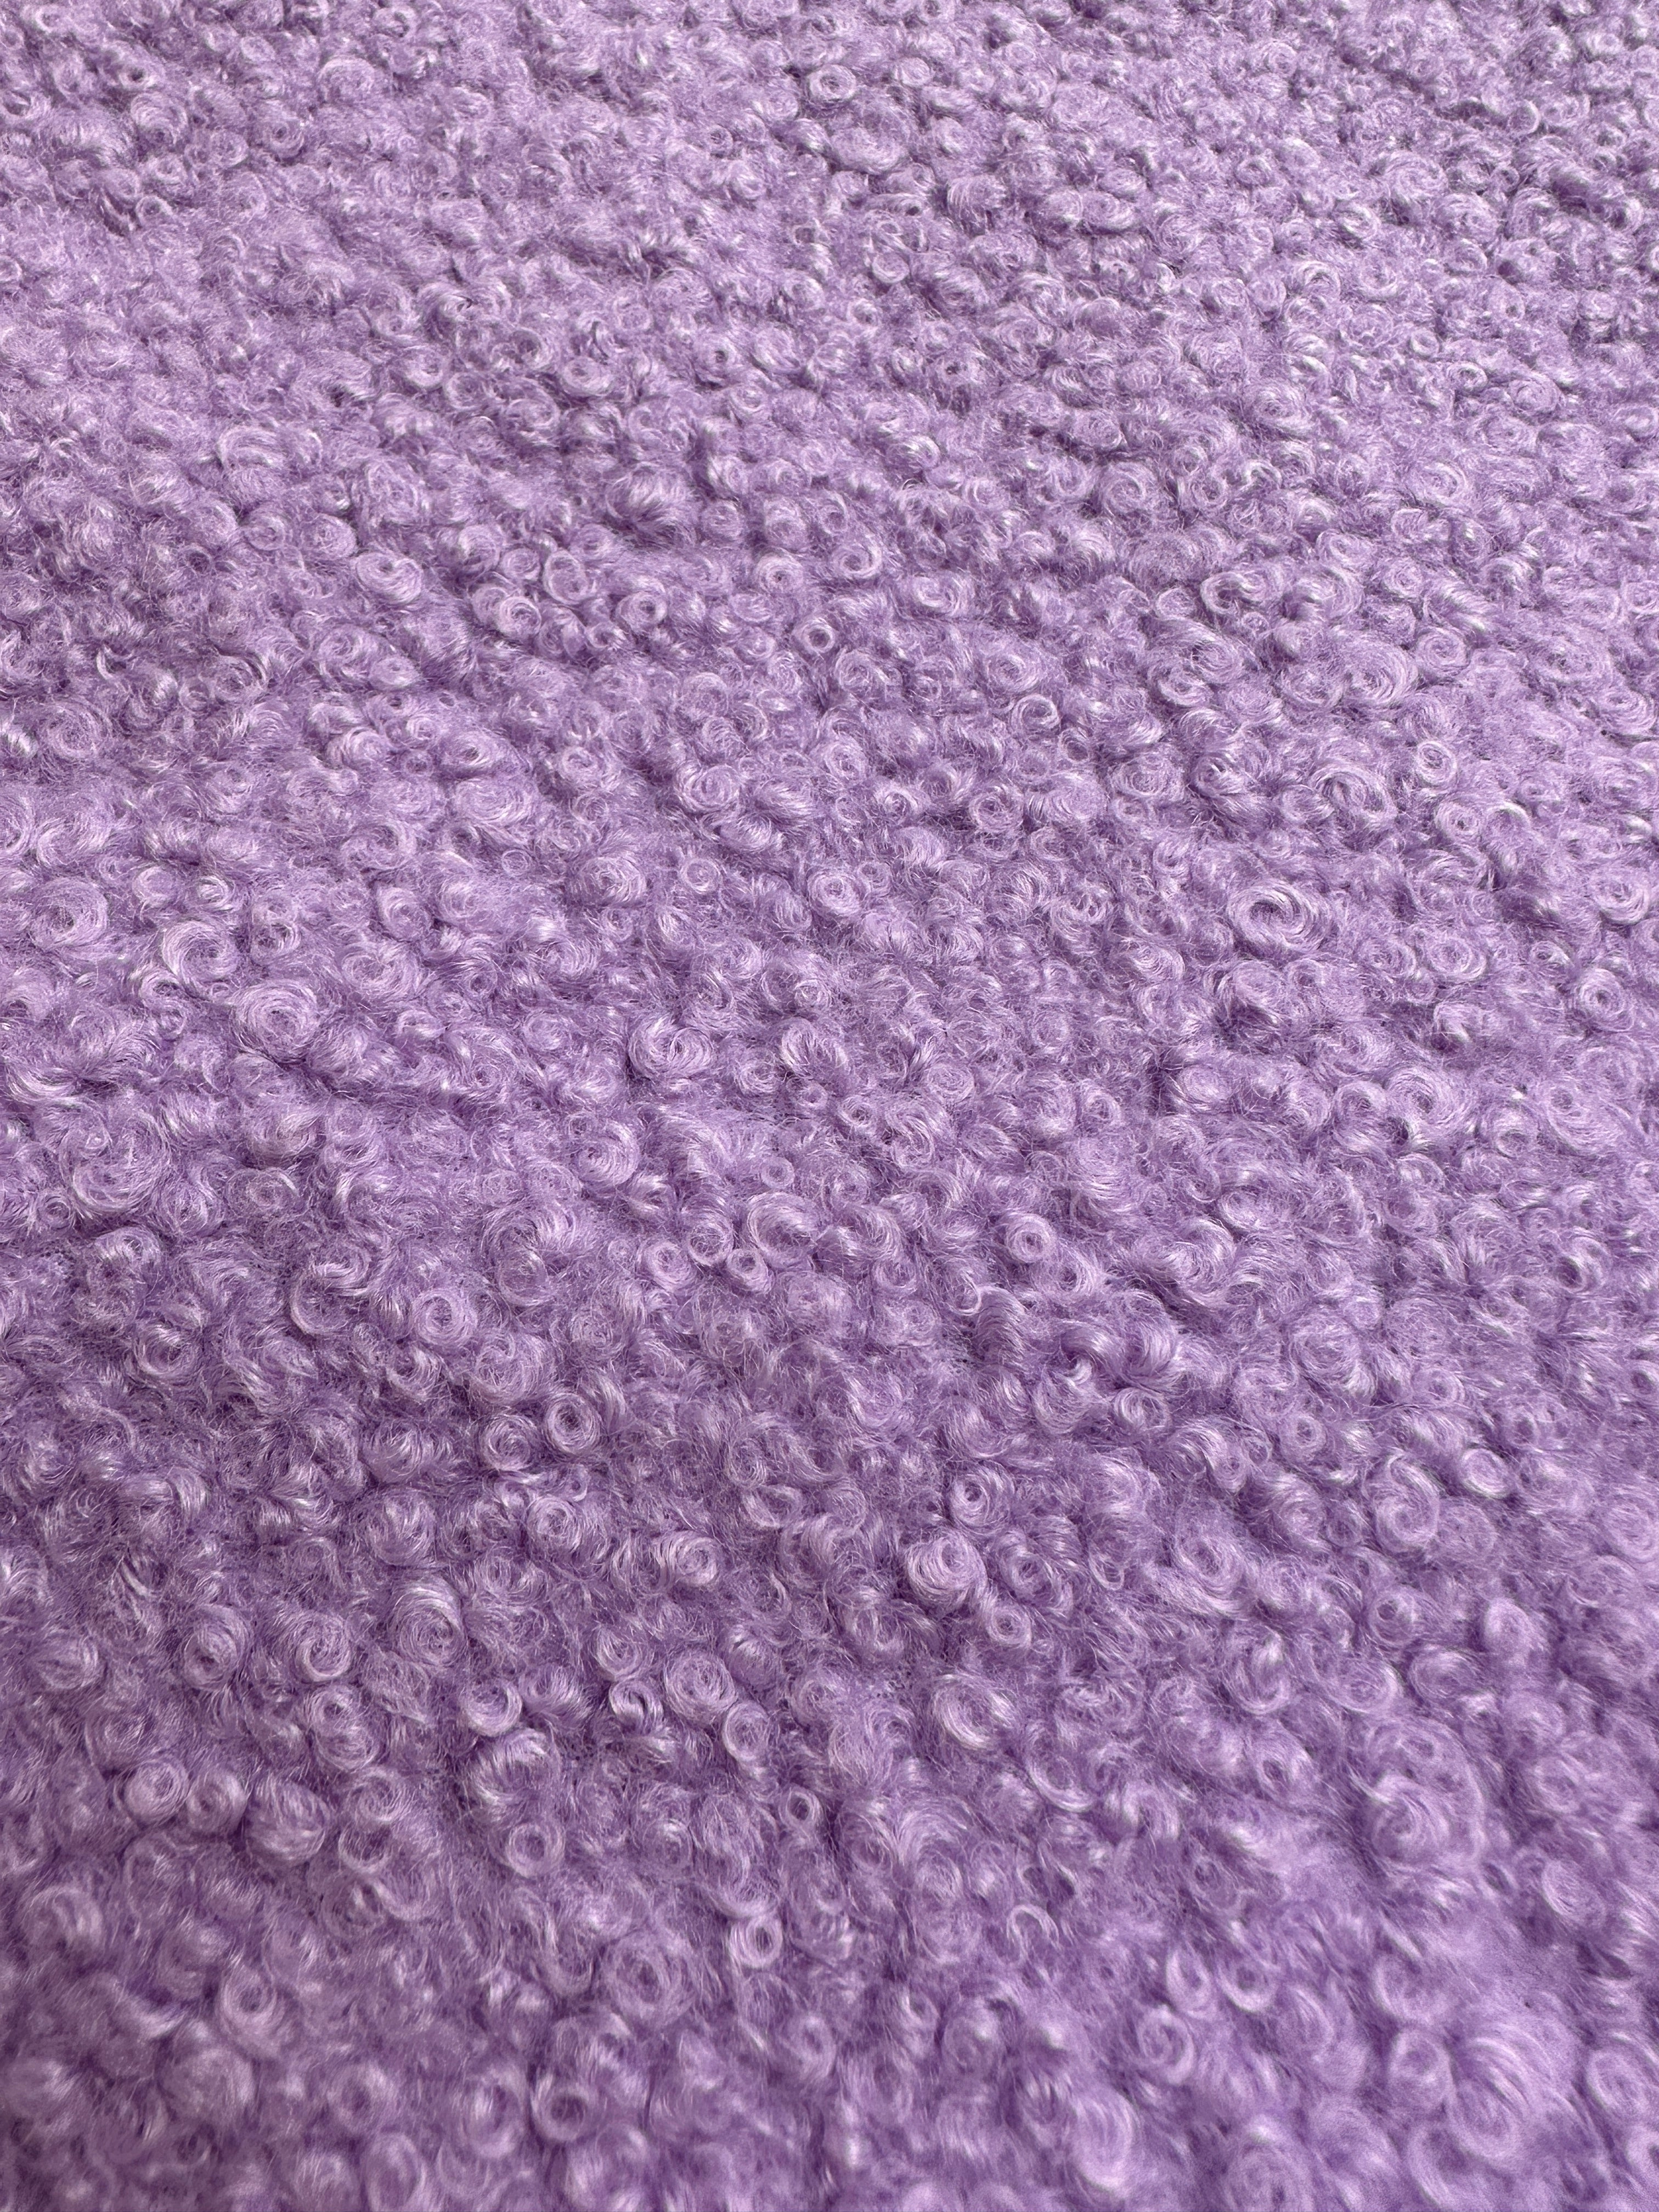 lavender Lamb Premium Faux Wool, light purple Faux Wool, purple Faux Wool, Faux Wool for jacket, premium Faux Wool, Faux Wool for winter, winter collection, Faux Wool on sale, Faux Wool in low price